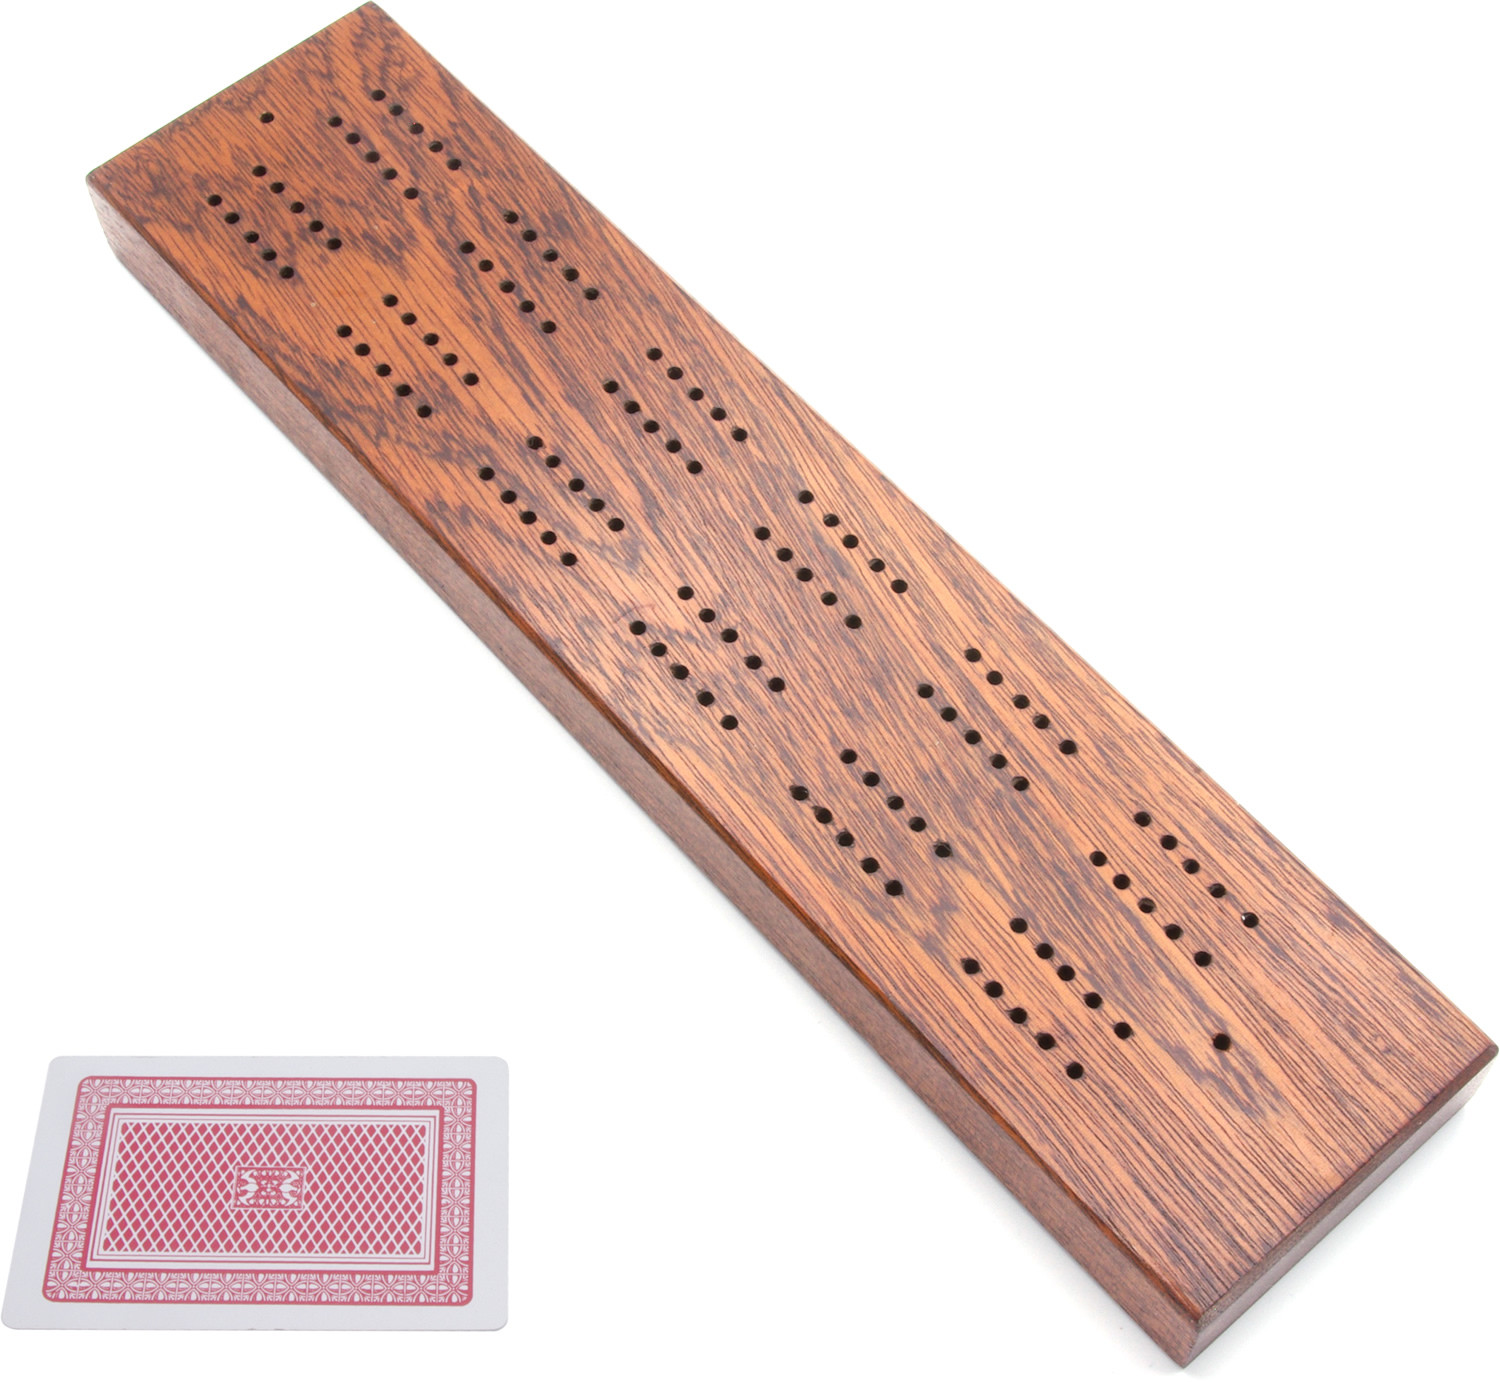 Solid mahogany cribbage board